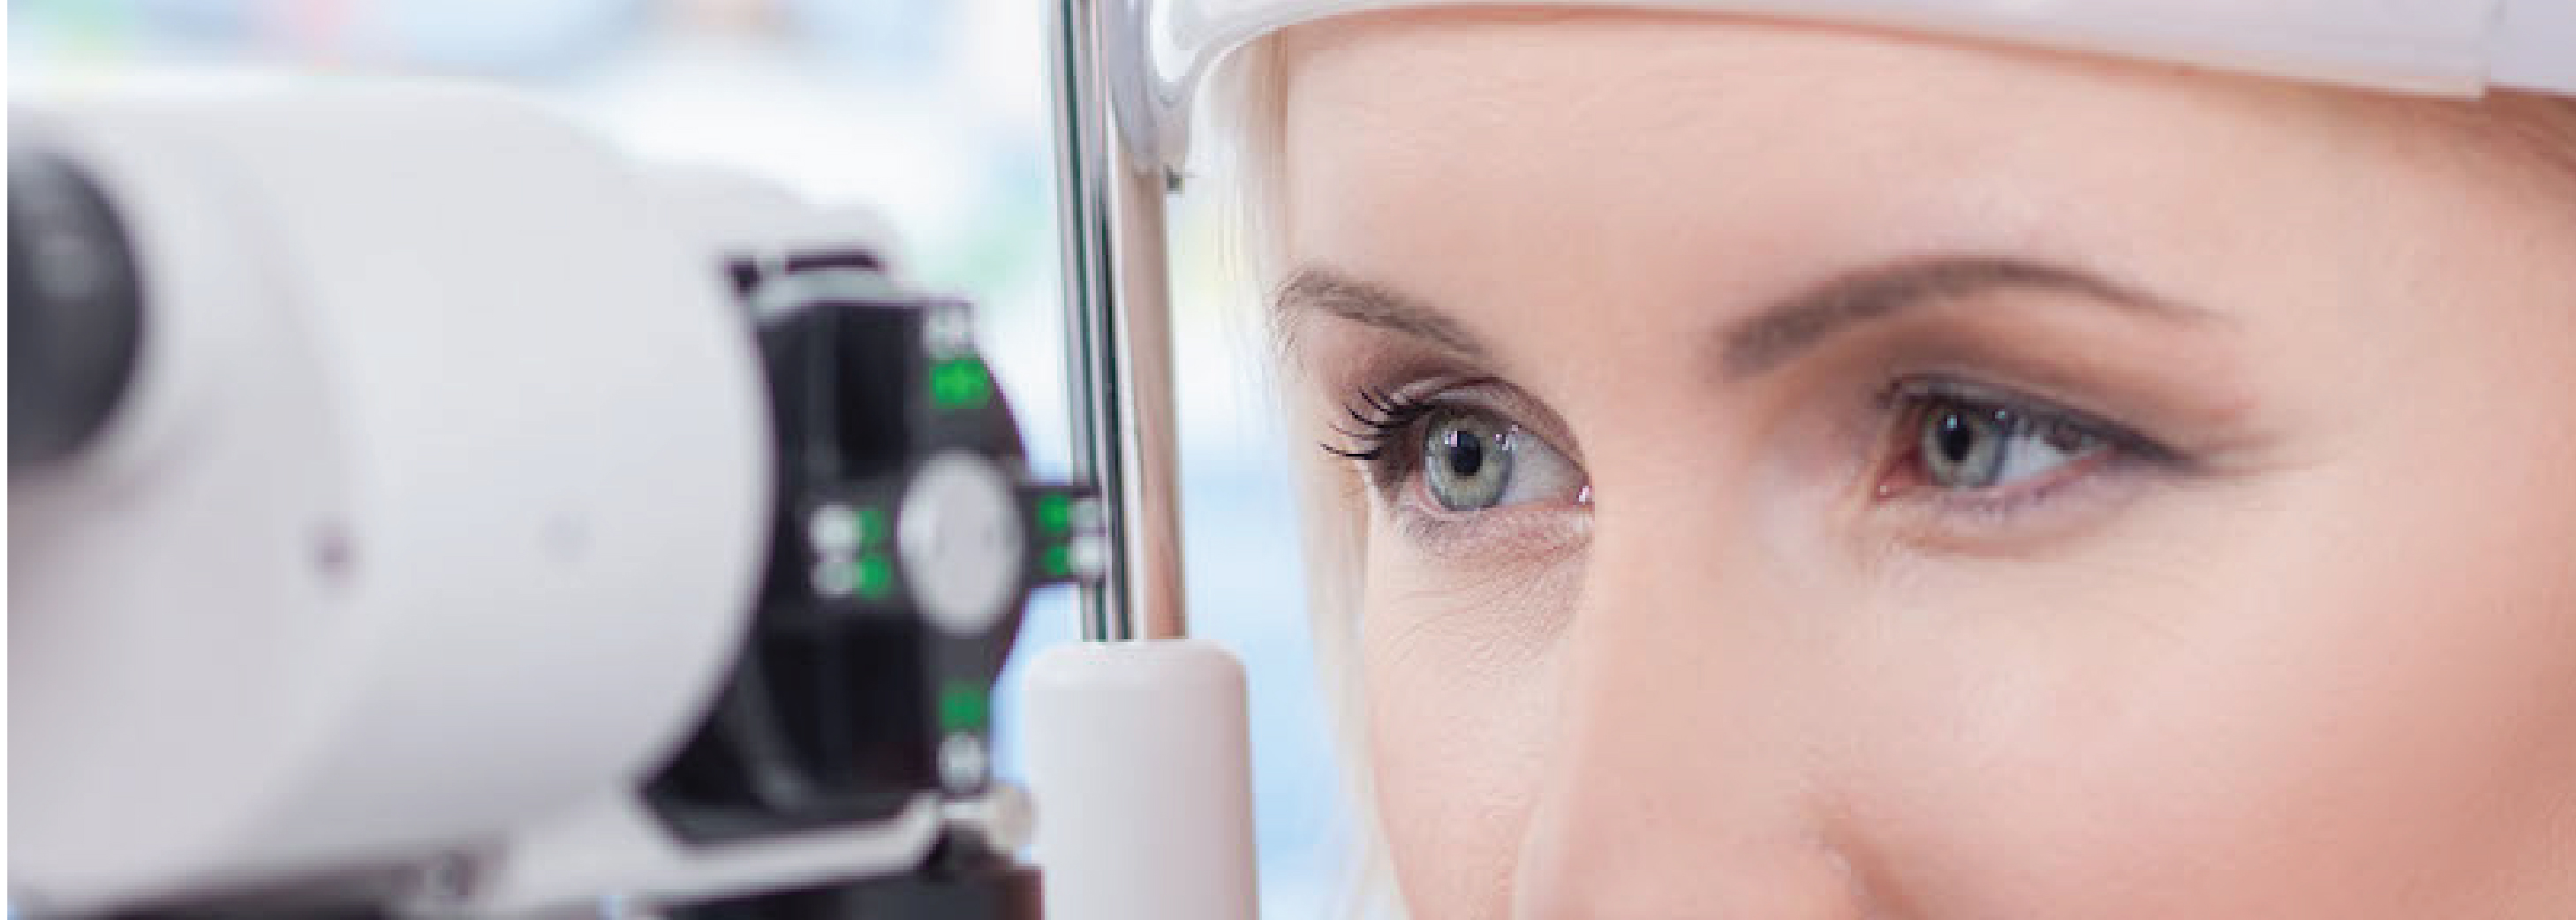 centrul oftamologic optinis